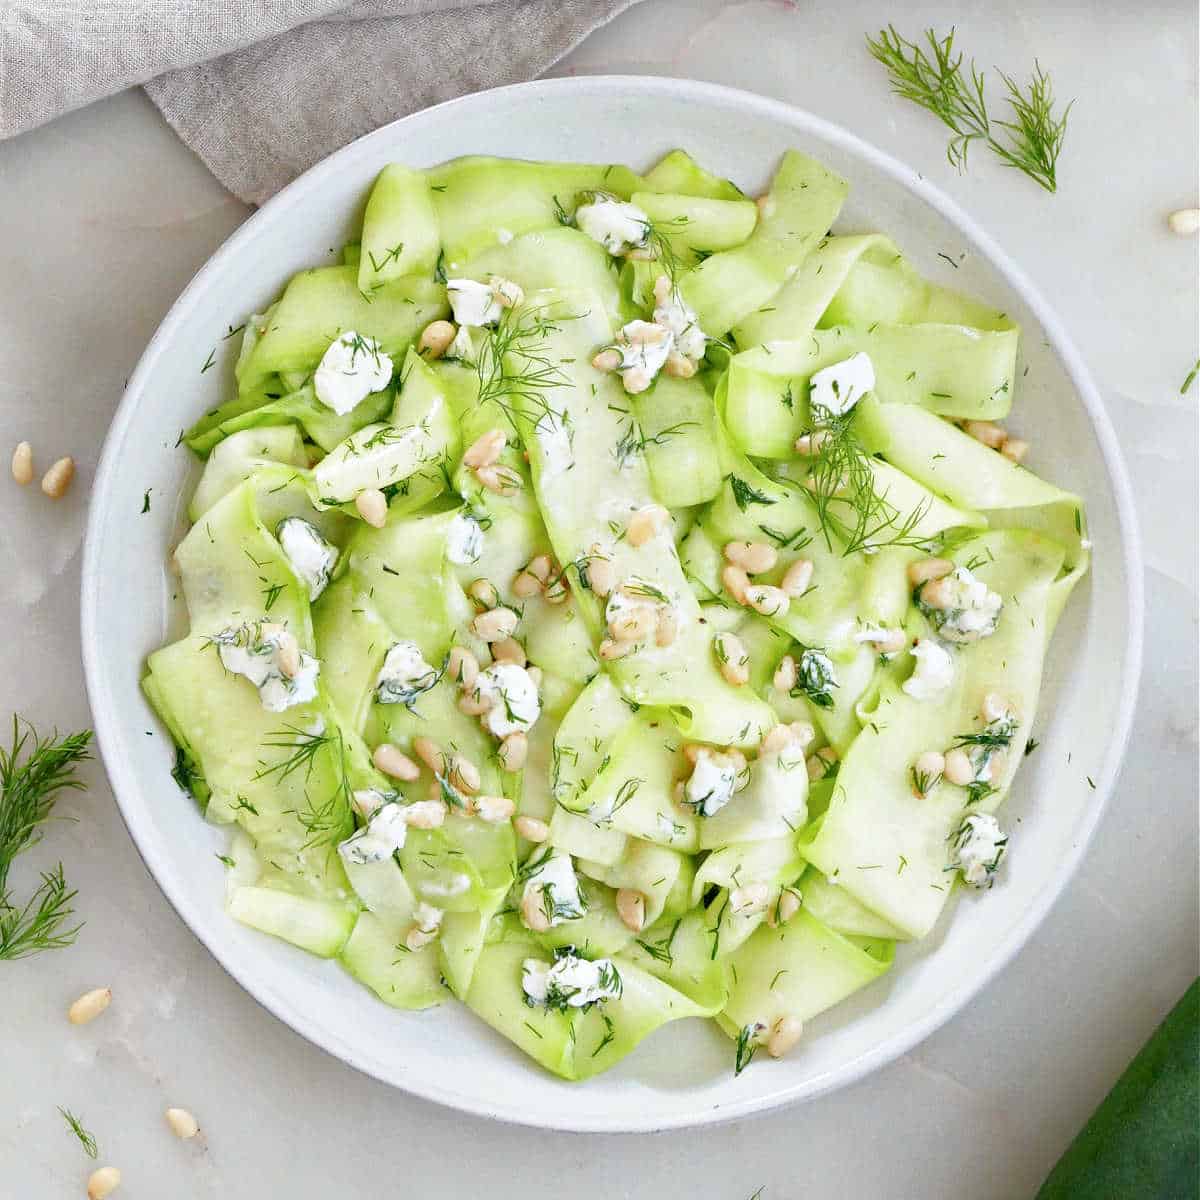 https://itsavegworldafterall.com/wp-content/uploads/2023/08/Zucchini-Ribbon-Salad-FI.jpg